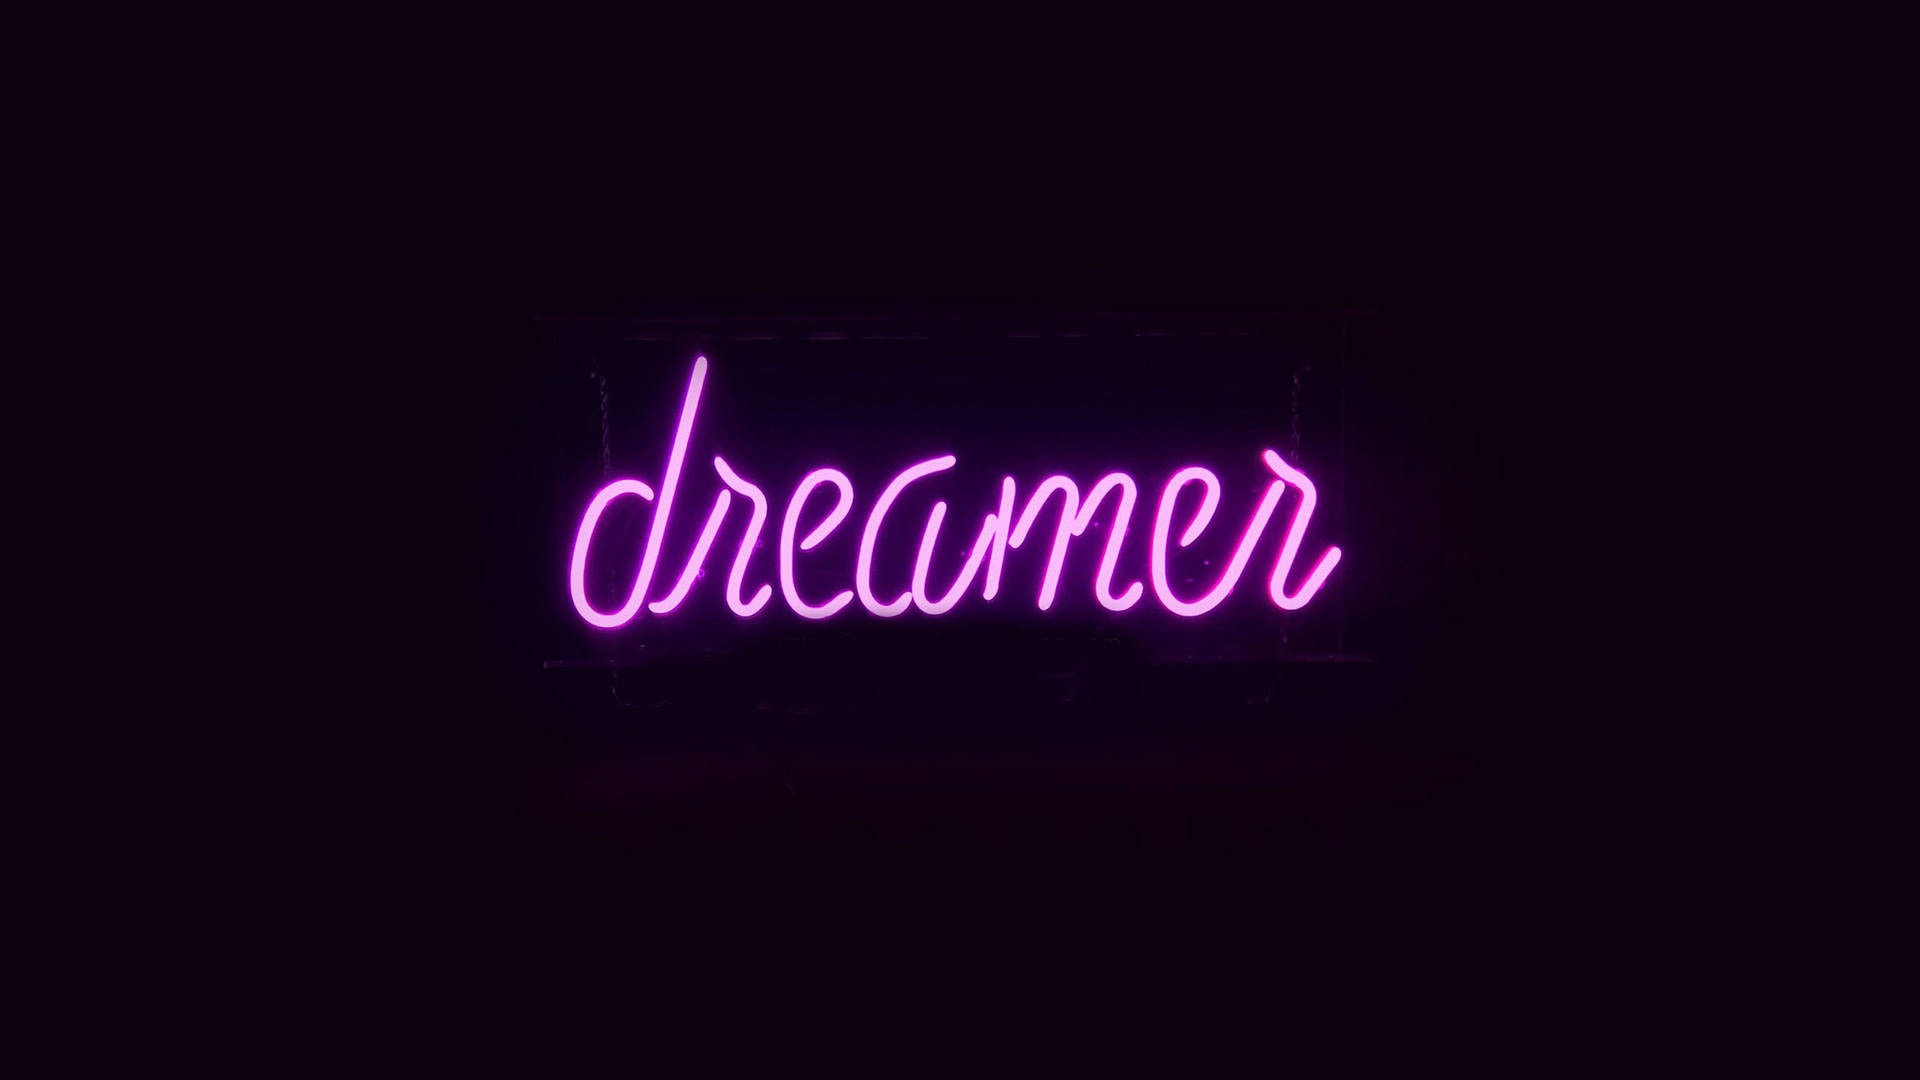 Dark Purple Dreamer Neon Sign Background